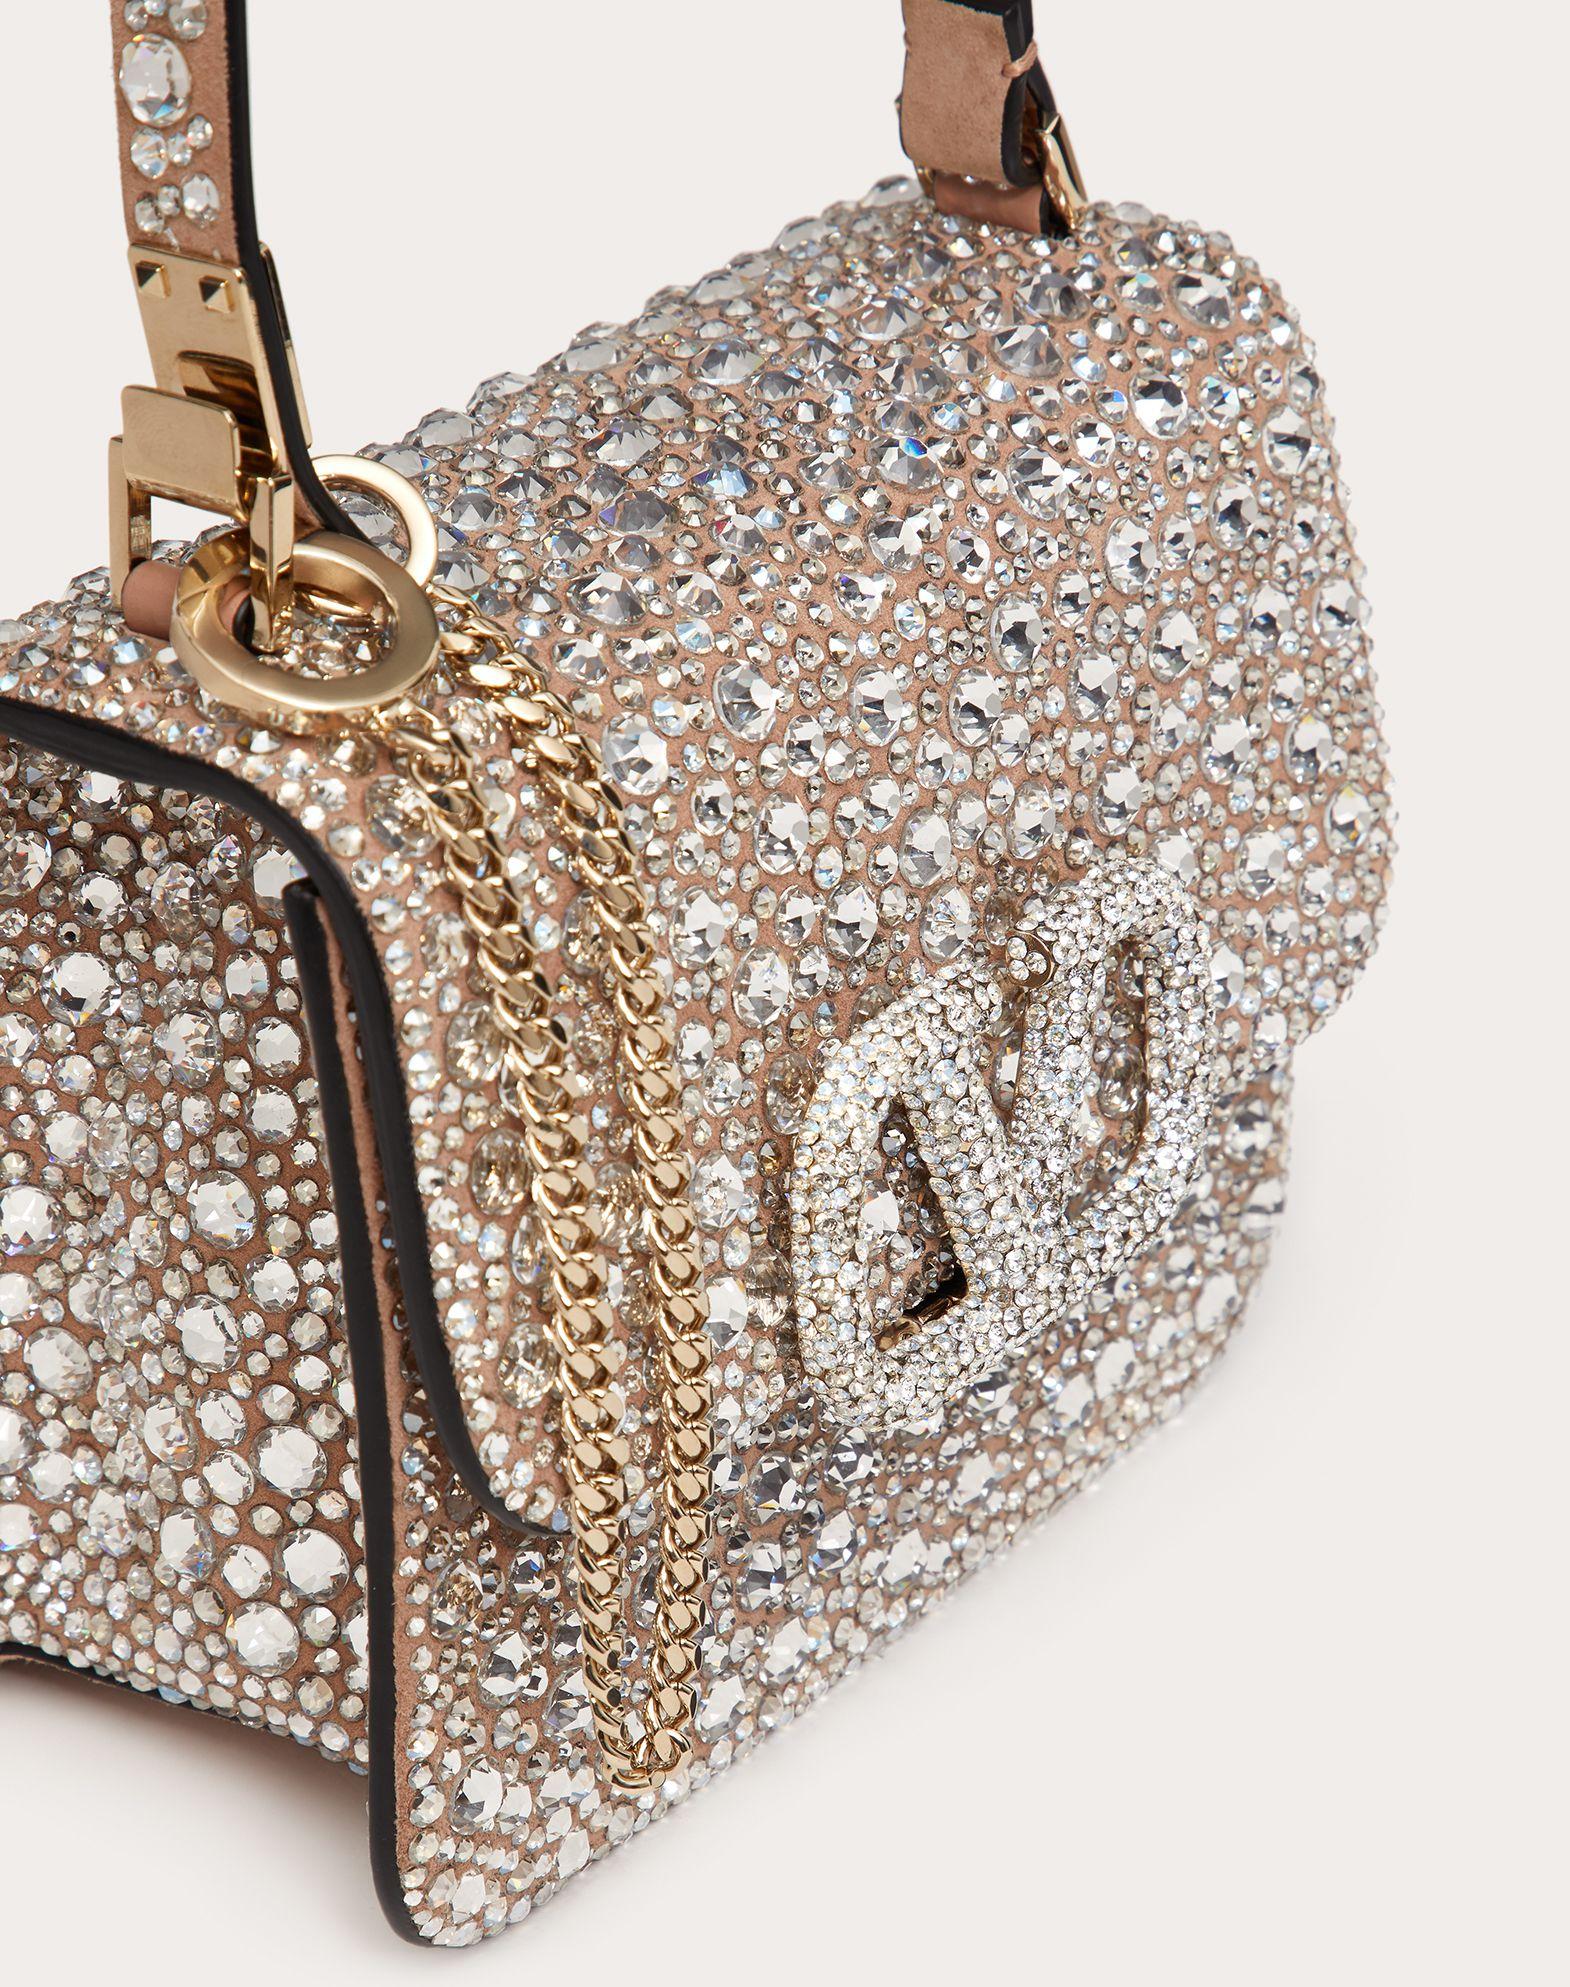 Valentino Vsling Mini Crystal-embellished Top-Handle Bag